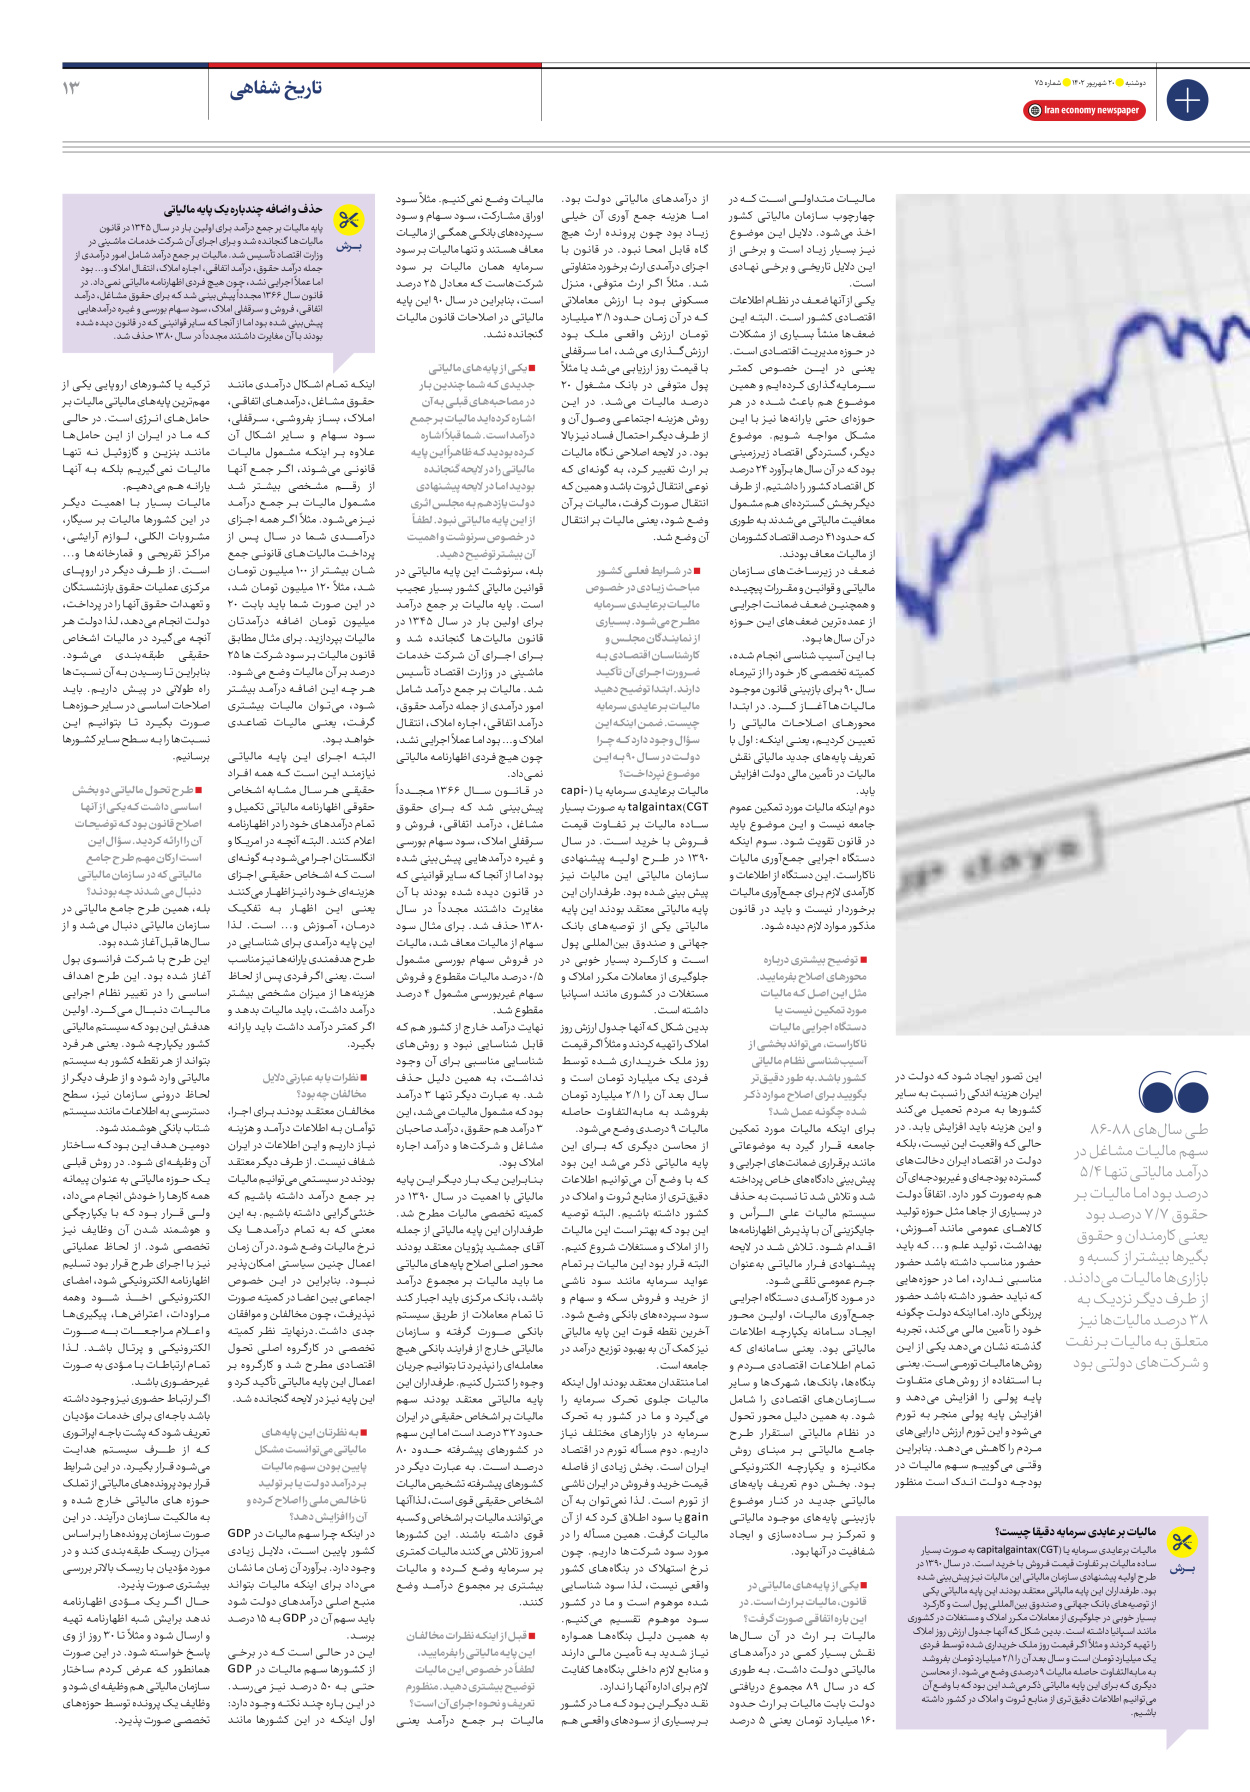 روزنامه ایران اقتصادی - شماره هفتاد و پنج - ۲۰ شهریور ۱۴۰۲ - صفحه ۱۳